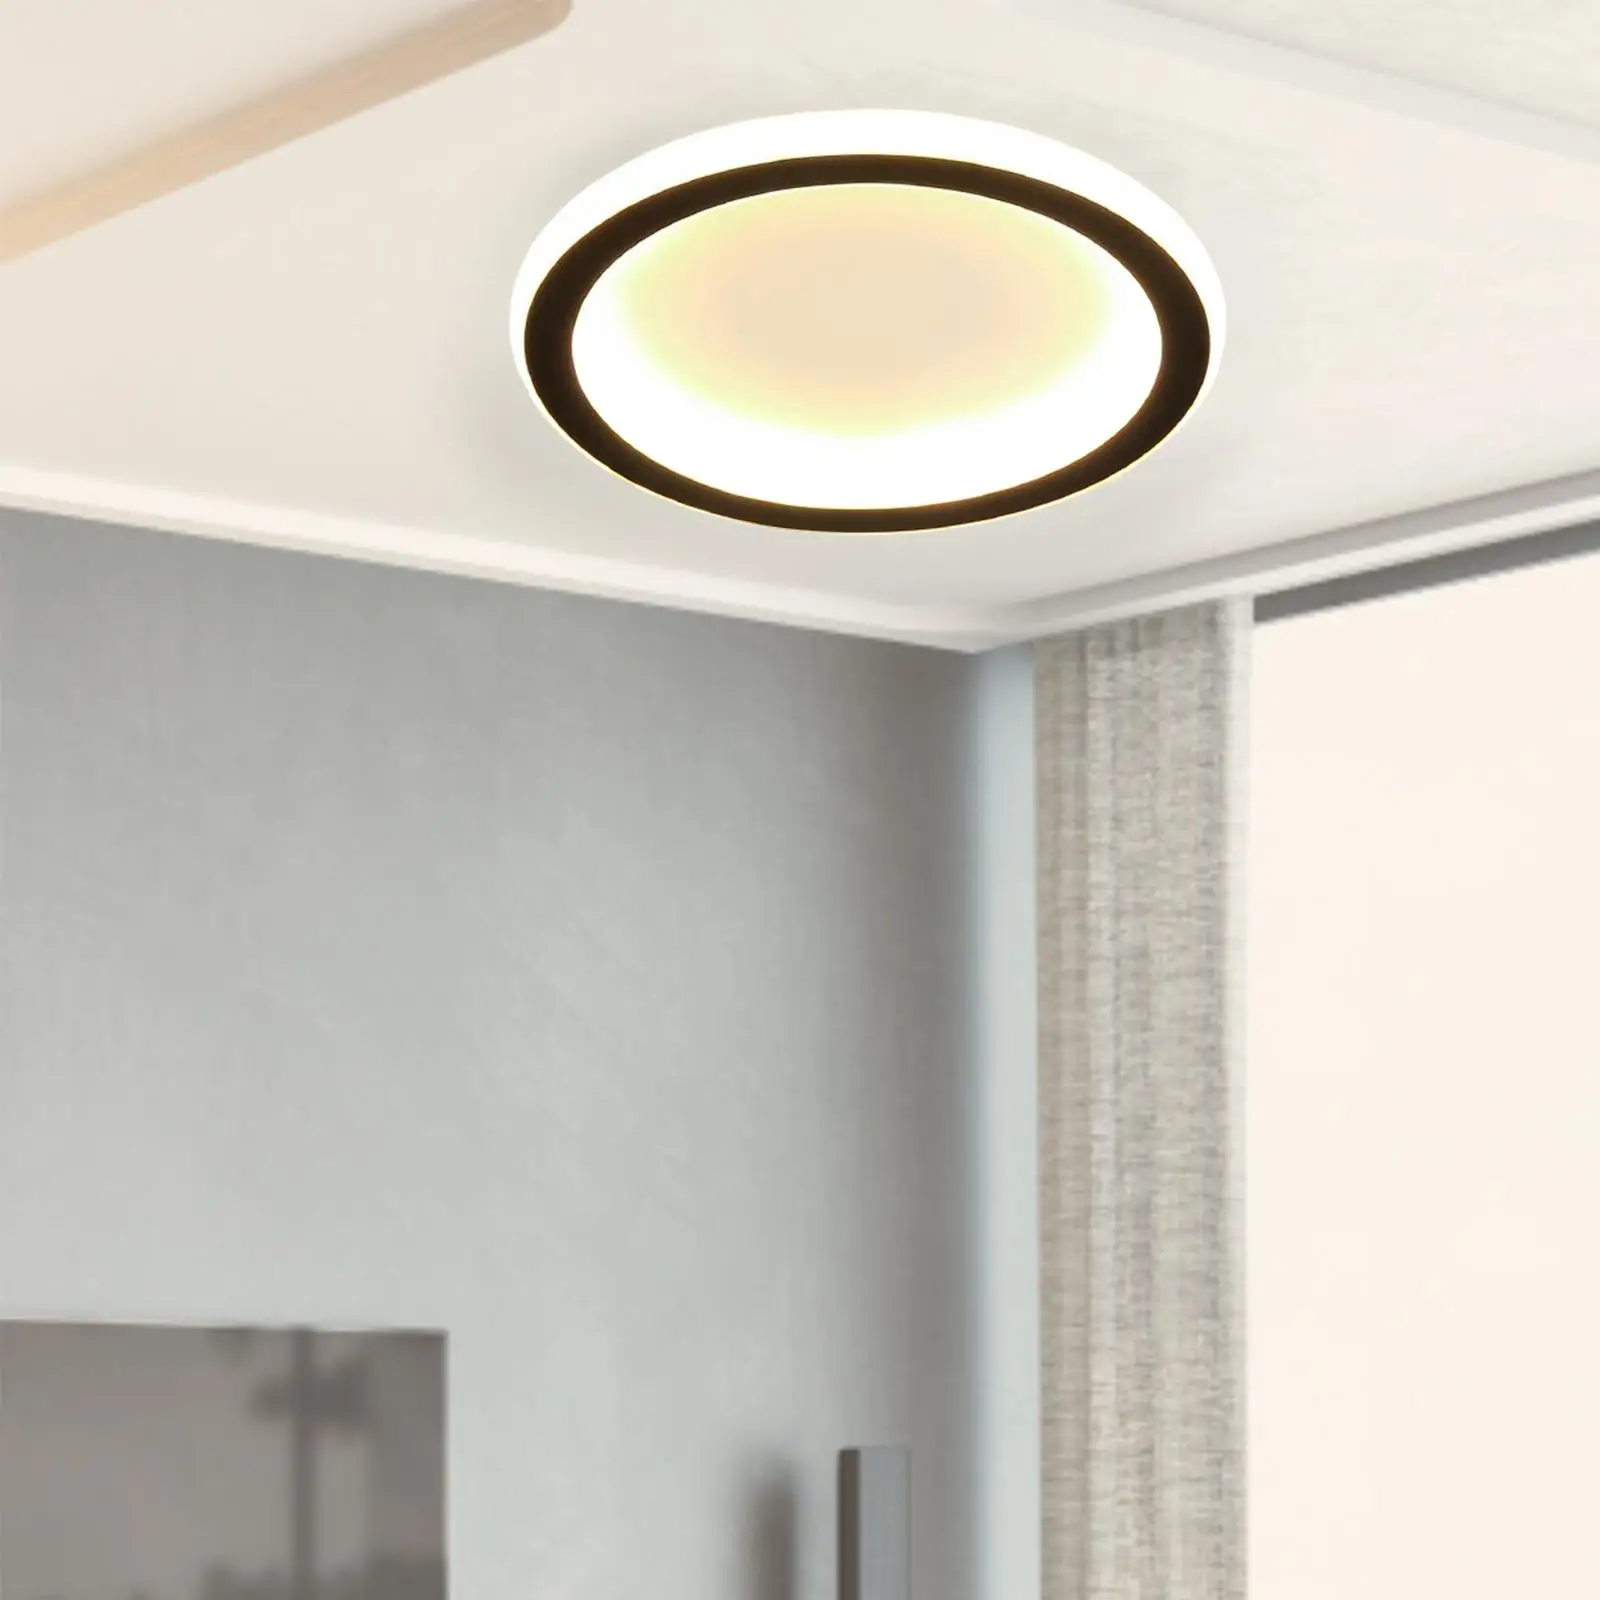 Modern Ceiling Light lamp Lighting LED Decoration Pendant Light Fixture for Corridor Office Dining Room Decor Bedroom